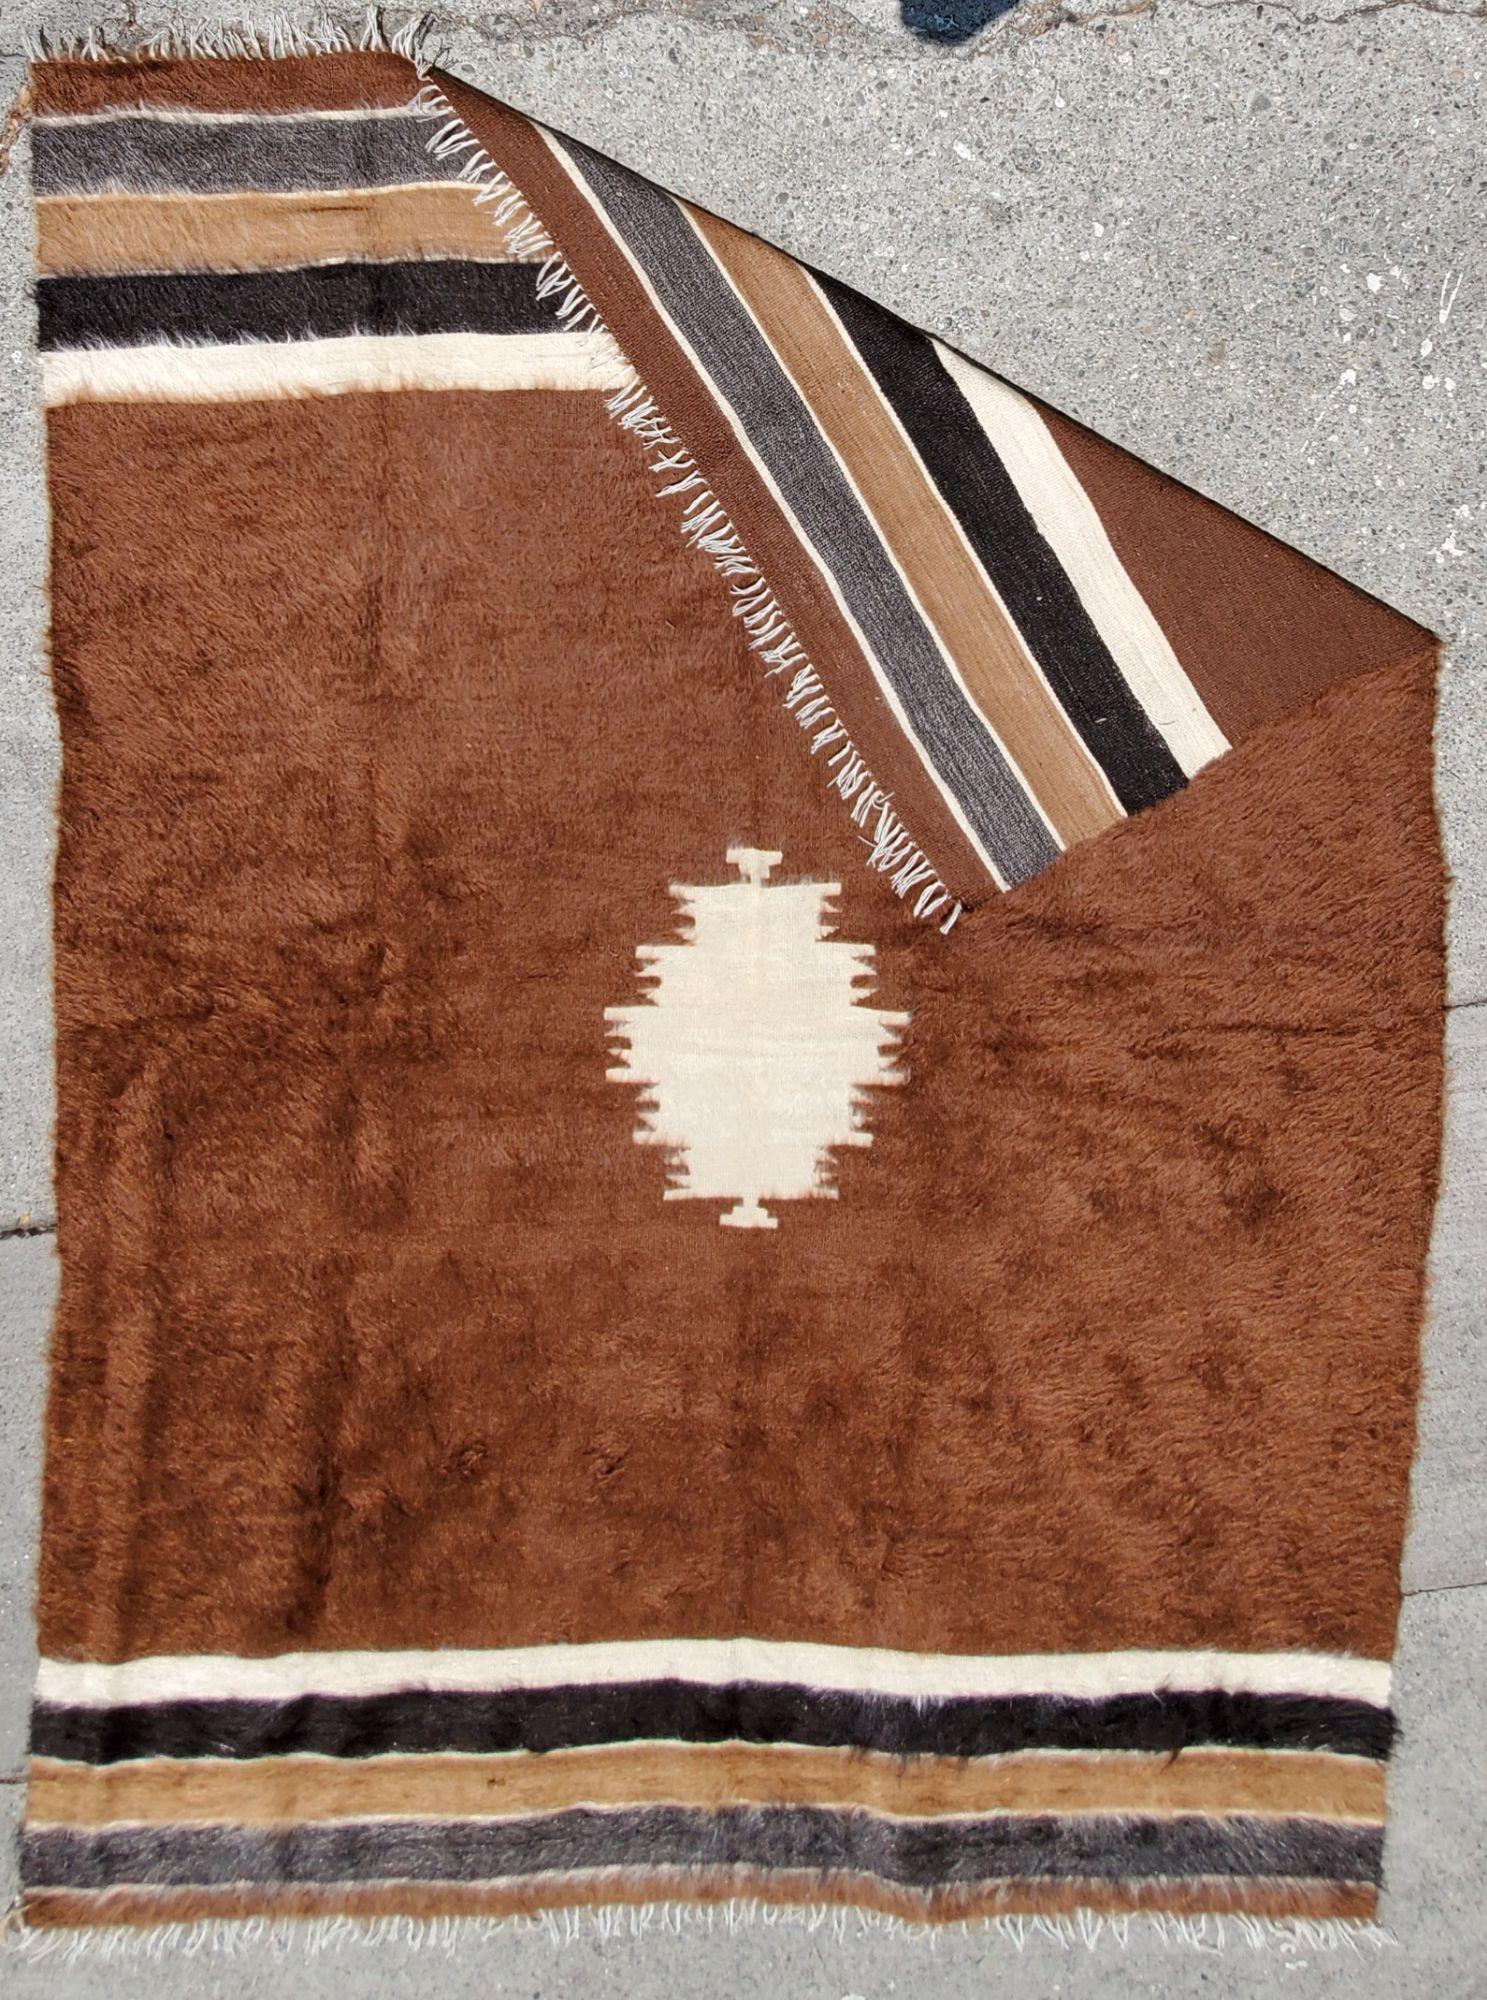 Handgefertigter Mohair-Mid-Century-Teppich  - Brauner Hintergrund mit Mittelauge und grau-weiß-braunen Streifen.

Maße ca. 78 x 67